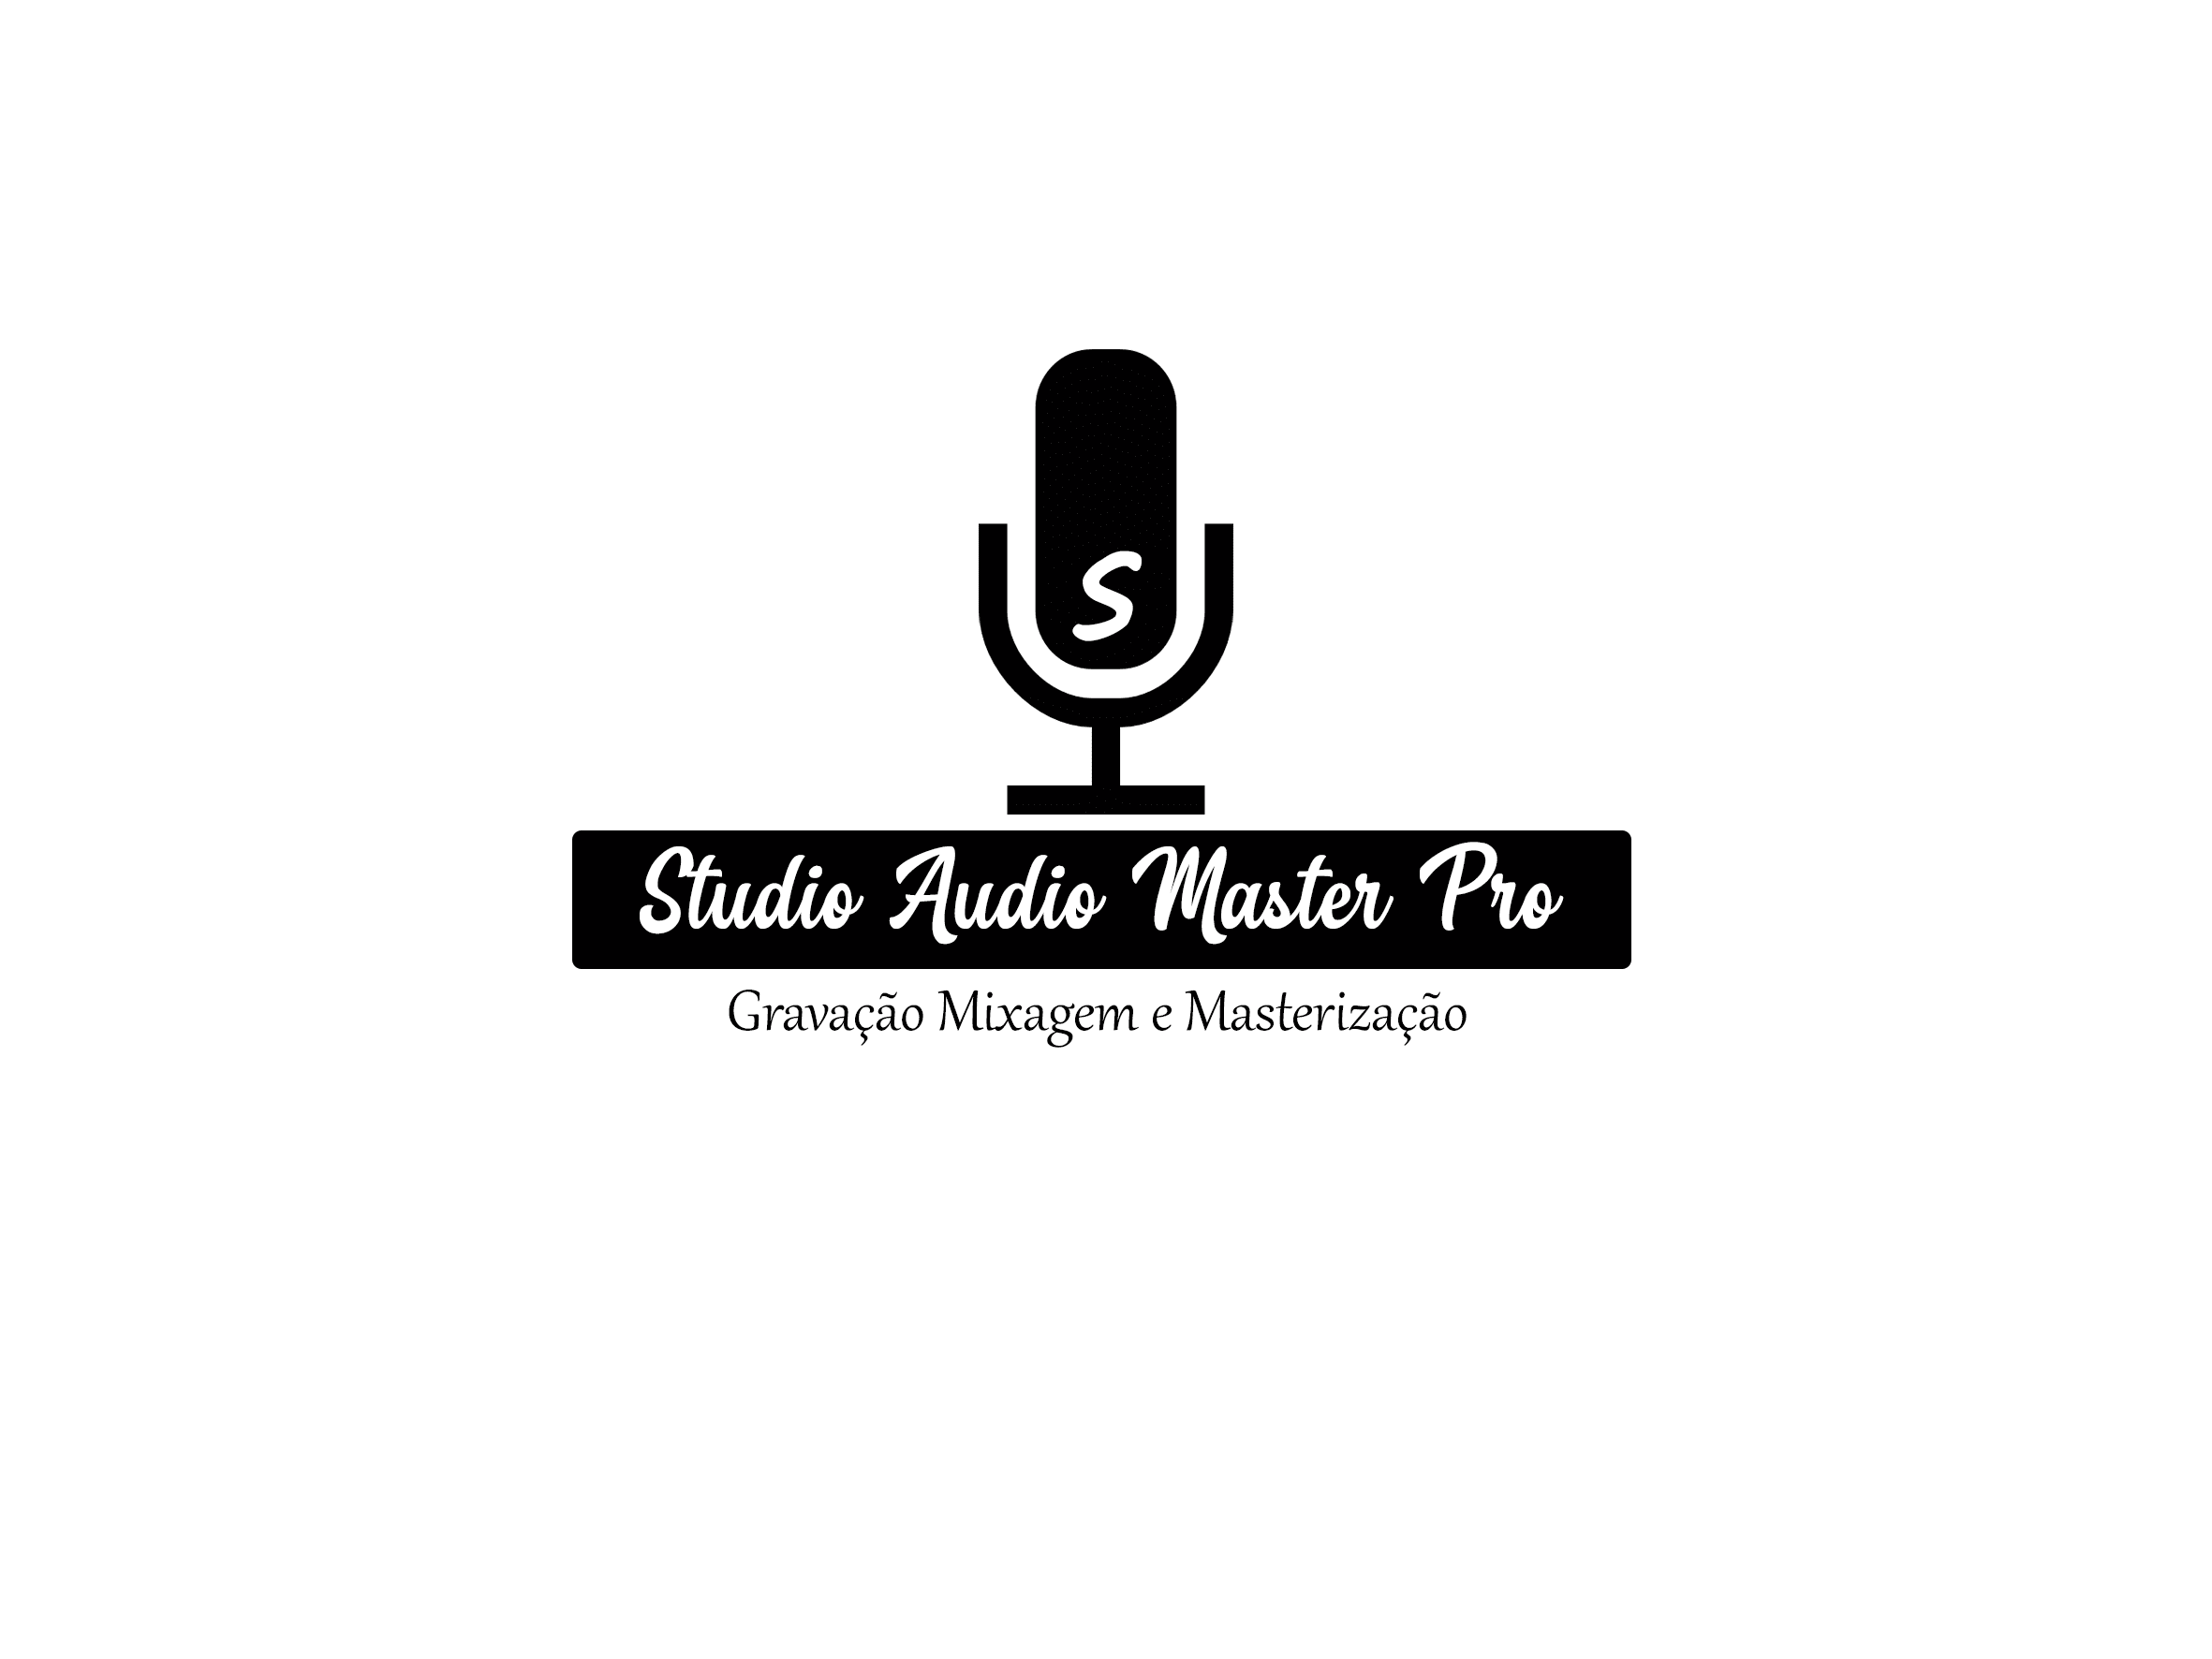 Studio Audio Master Pro